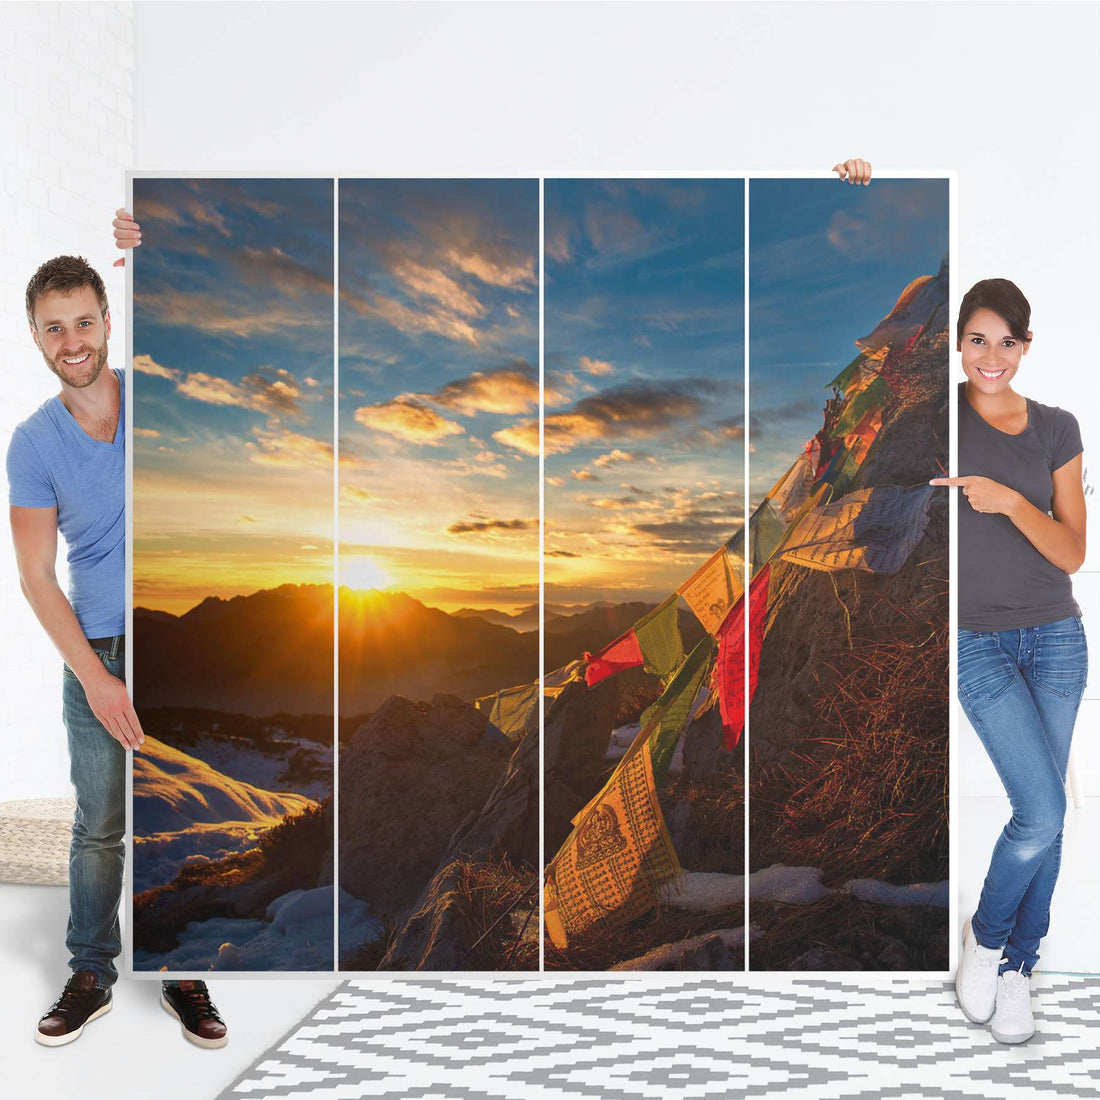 Klebefolie für Schränke Tibet - IKEA Pax Schrank 201 cm Höhe - 4 Türen - Folie